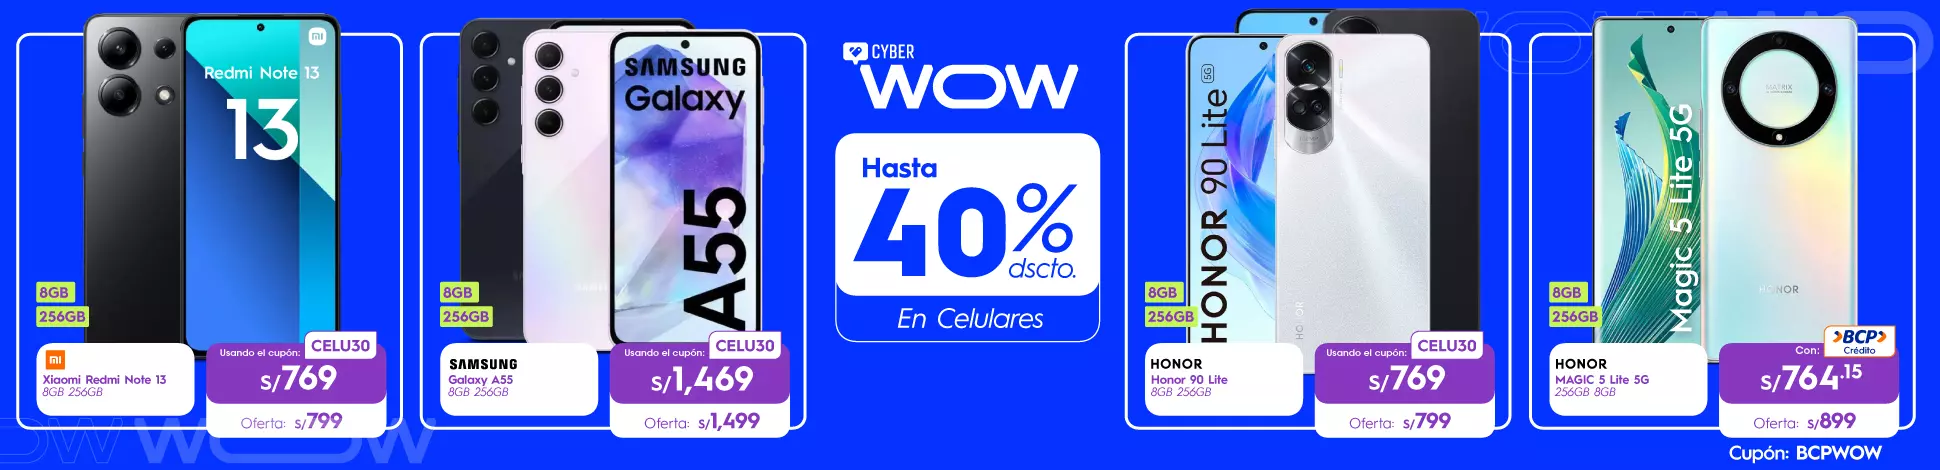 hs-CW-abril24-celulares (2) (2).webp | Juntoz.com